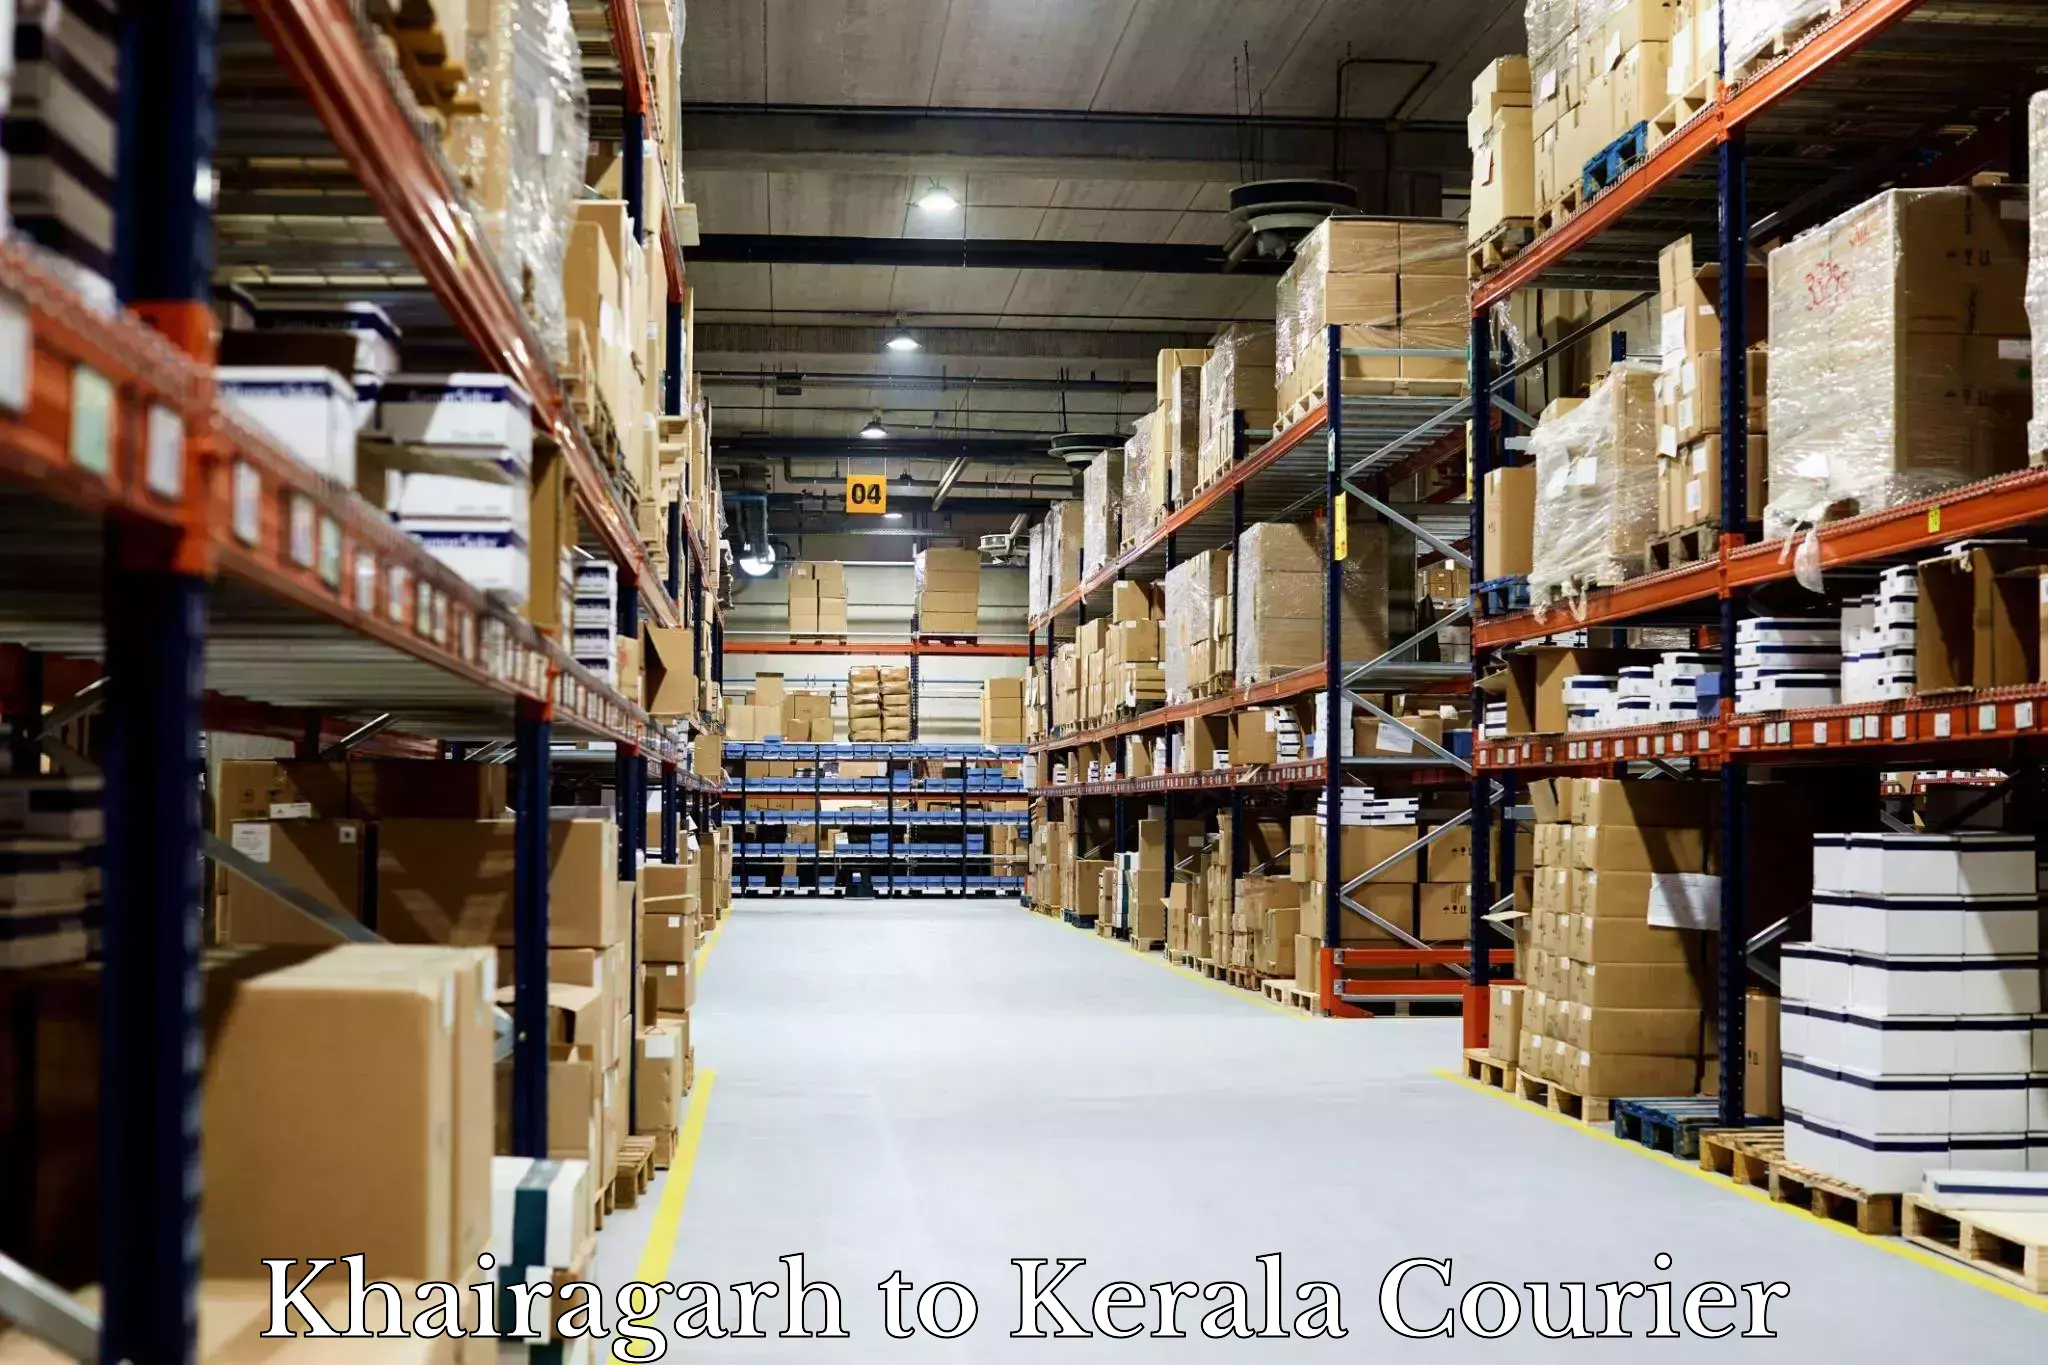 Supply chain efficiency Khairagarh to Koothattukulam